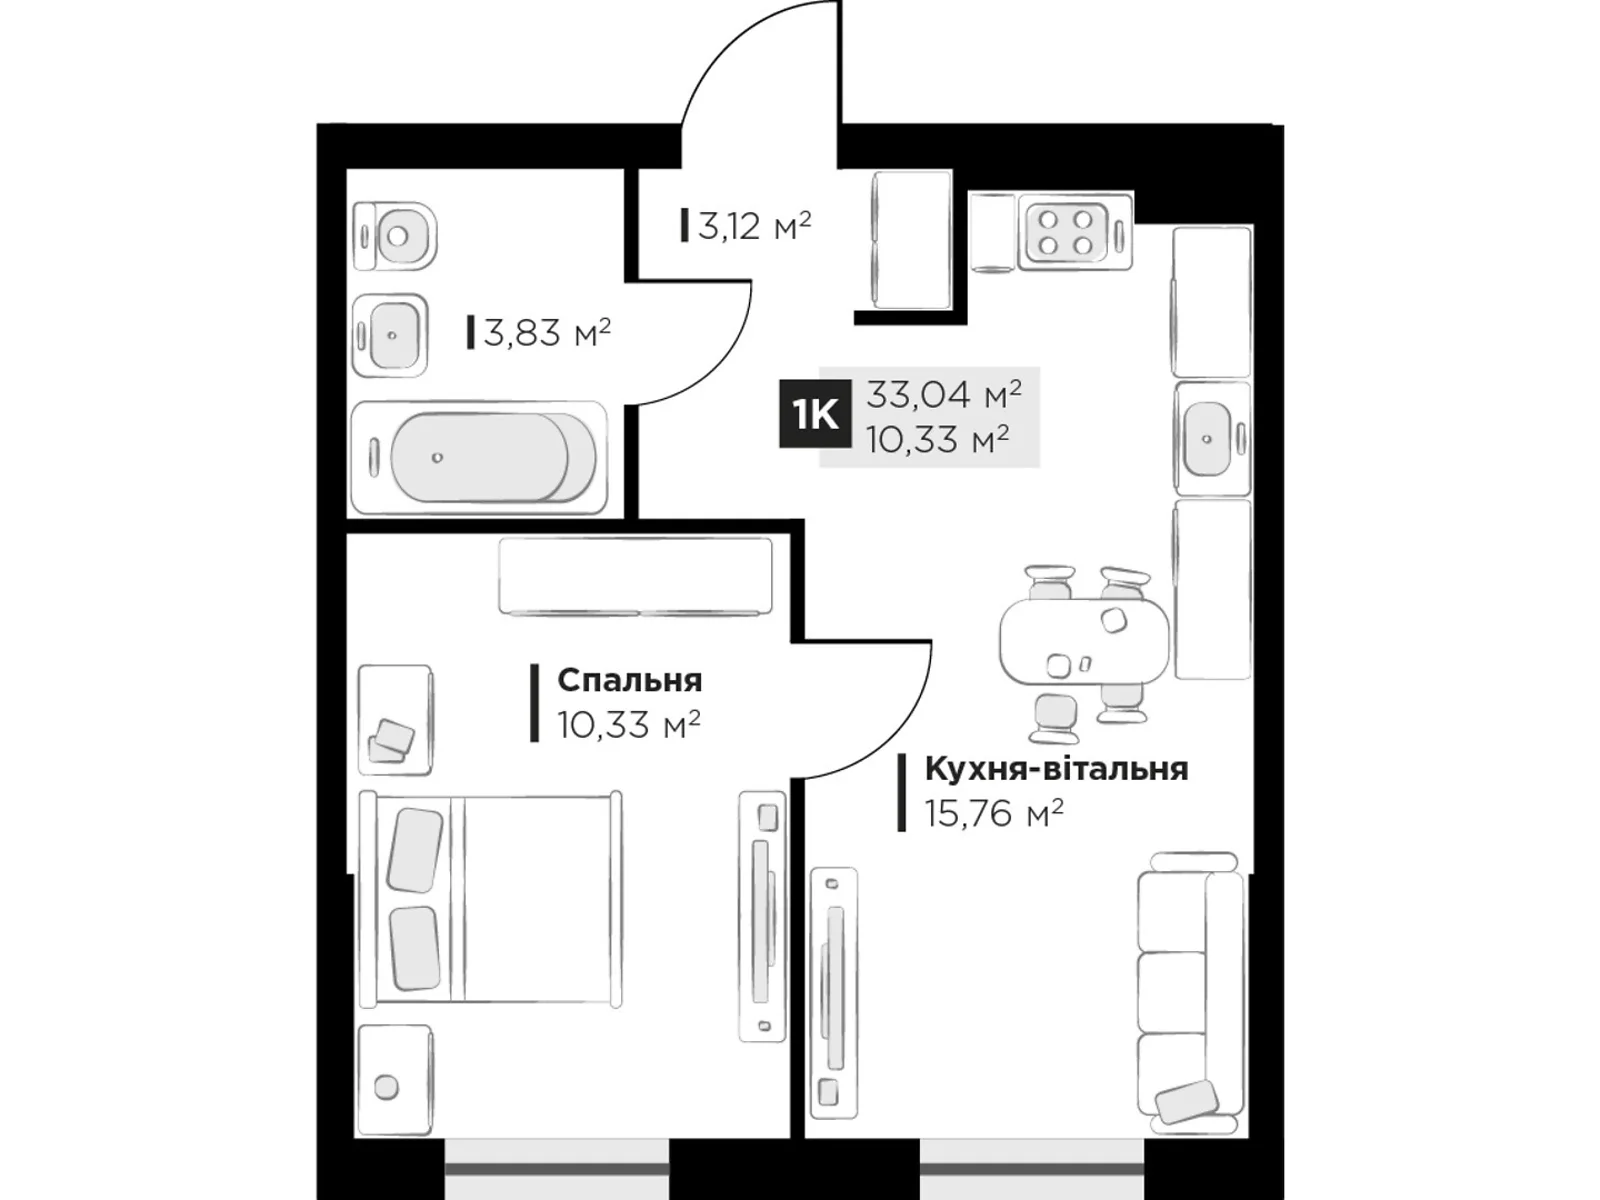 Продається 1-кімнатна квартира 33.04 кв. м у Винниках, вул. Галицька